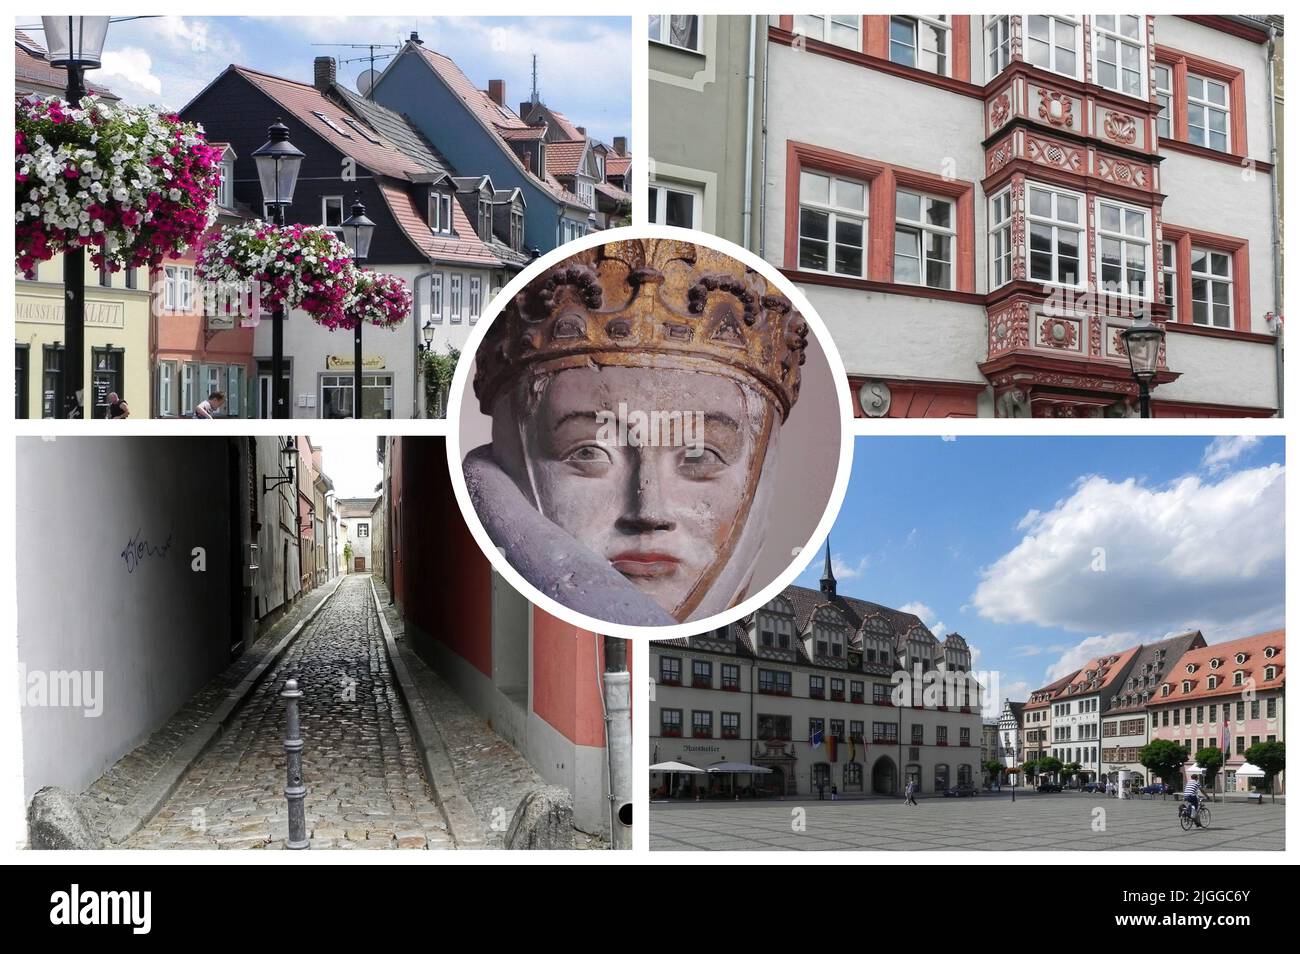 Naumburg est une belle et ancienne ville d'Allemagne, située dans le pays de Saxe-Anhalt, pleine de monuments et de lieux d'intérêt historique. Banque D'Images